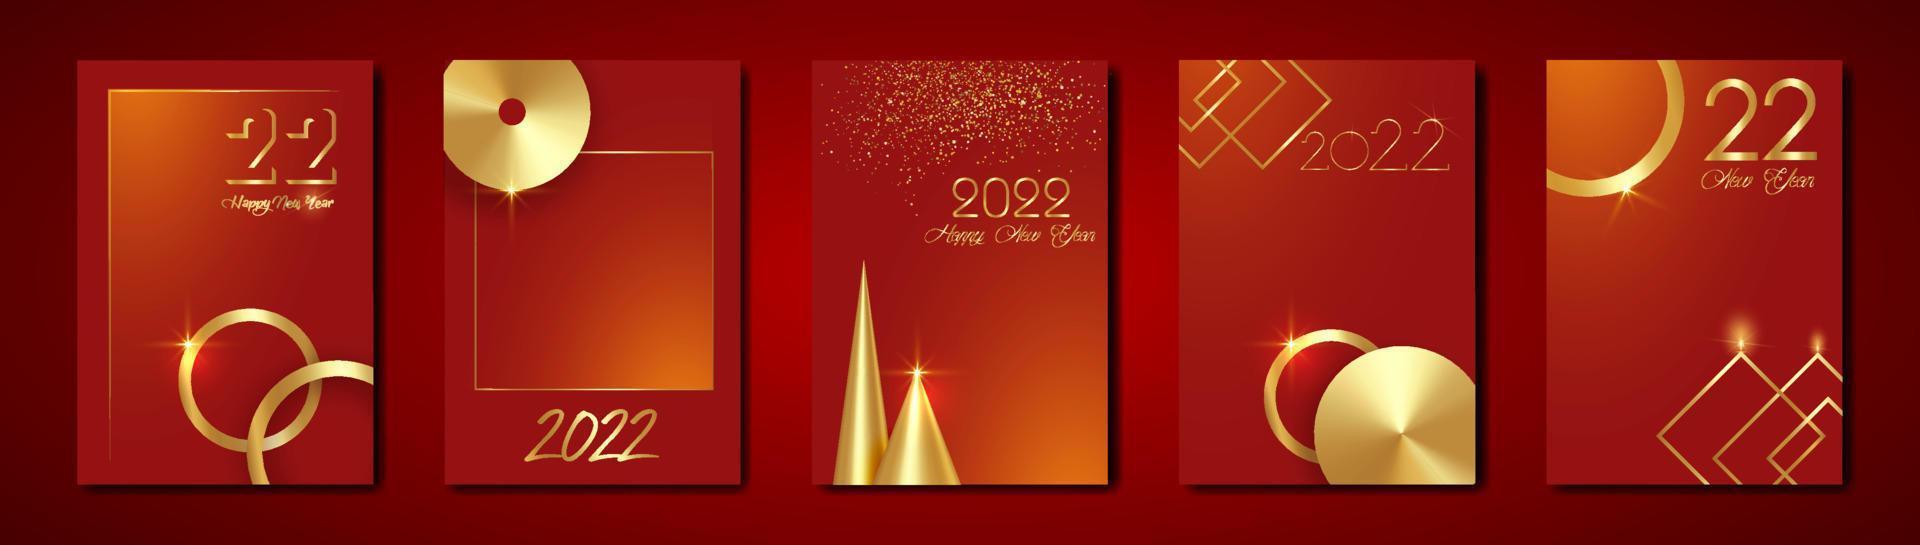 définir des cartes 2022 bonne année texture or, fond moderne rouge luxe doré, éléments pour calendrier et carte de voeux ou invitations de vacances d'hiver sur le thème de noël avec des décorations géométriques vecteur